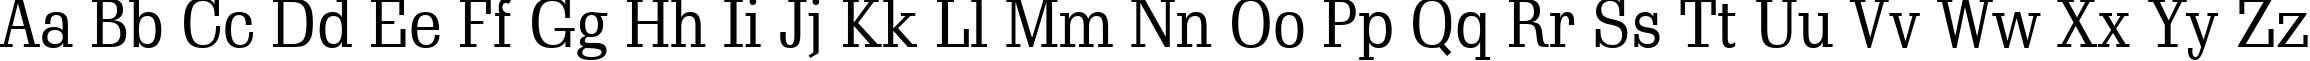 Пример написания английского алфавита шрифтом Schadow BT